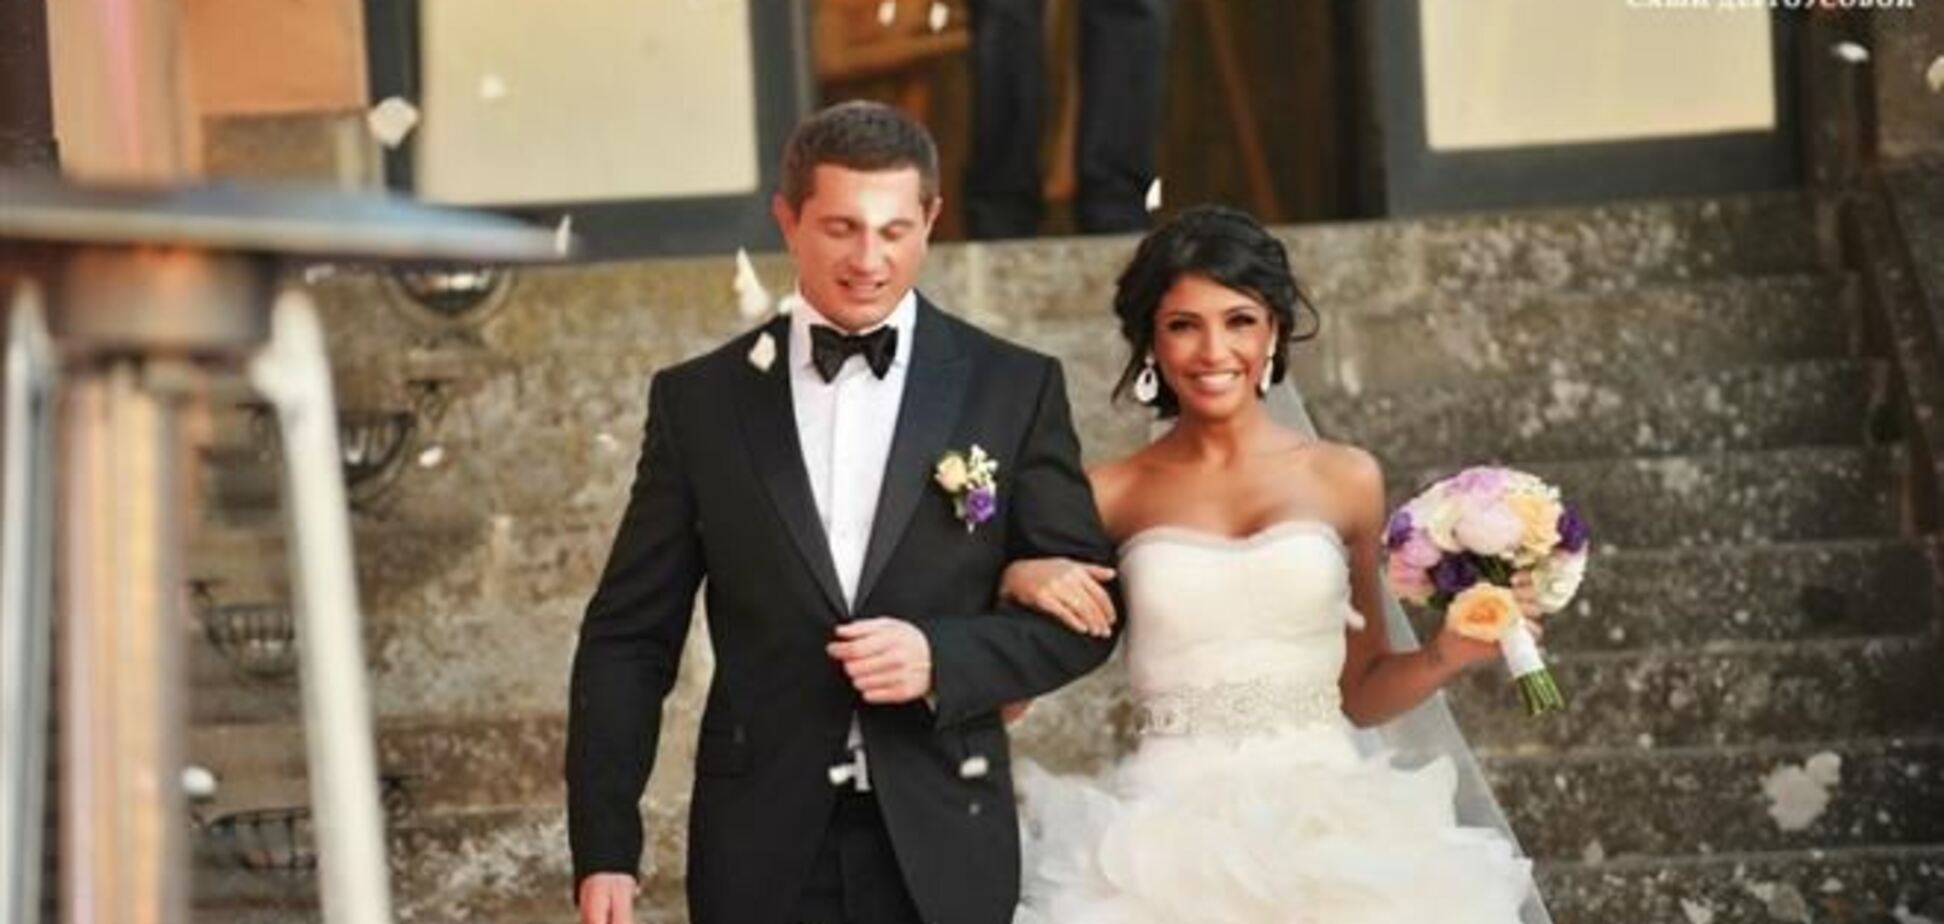 Димопулос продает свое свадебное платье за 90 тыс.грн